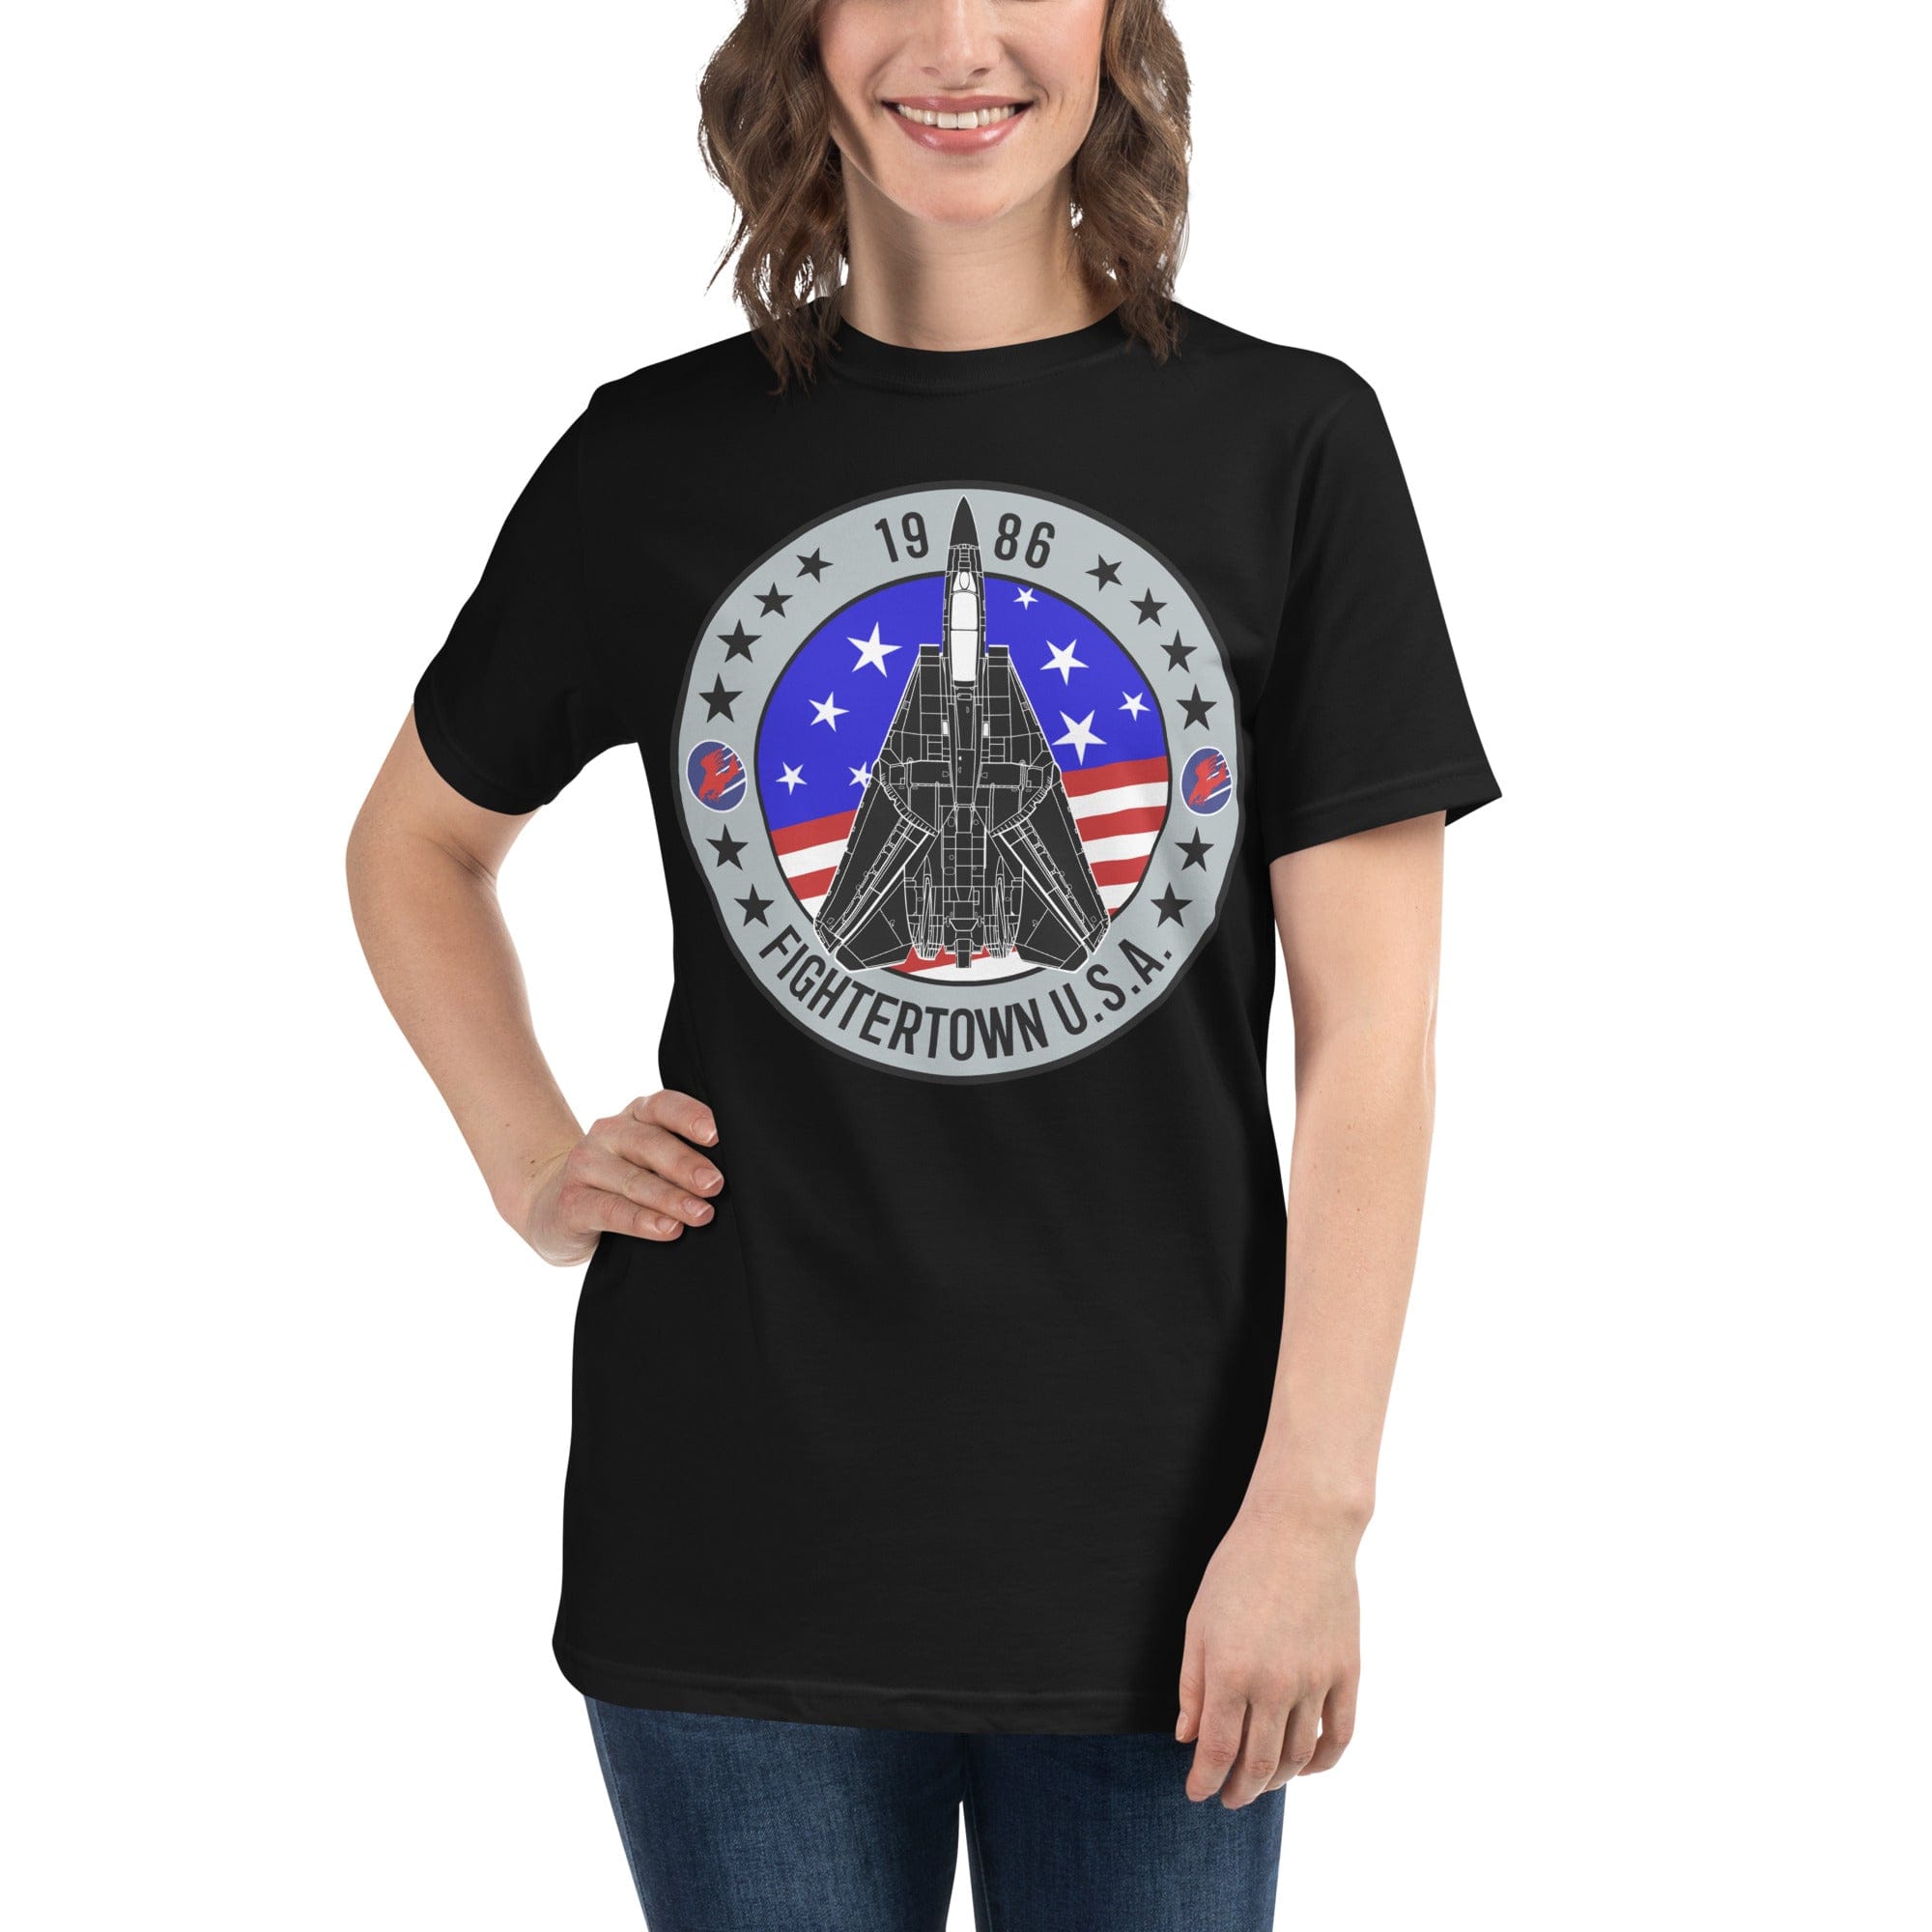 Top Gun Fans Shirts & Tops F-14 Tomcat Fightertown Organic T-Shirt